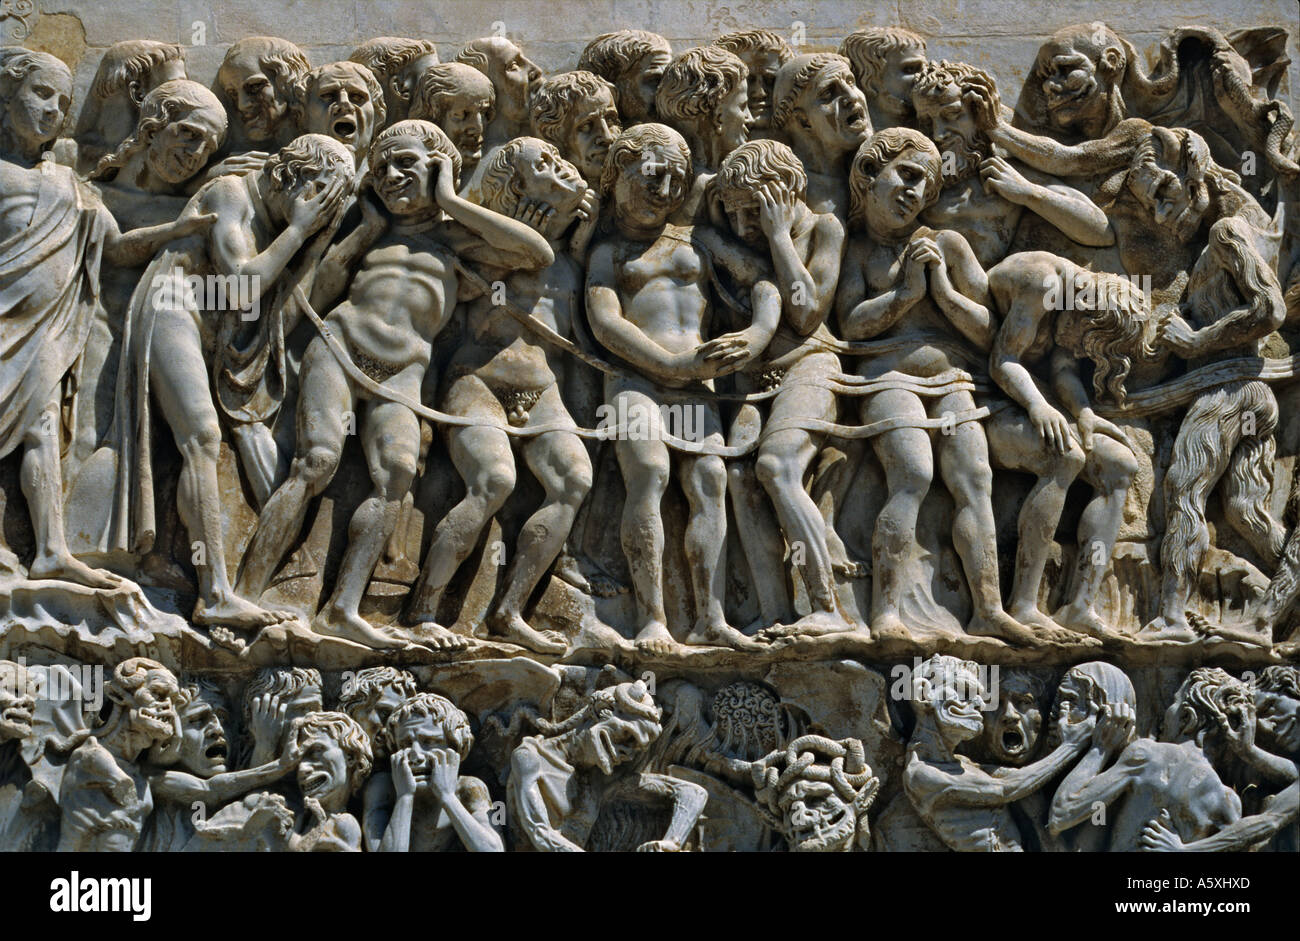 Marmor Skulptur an der Fassade Orvieto Dome (1290-1330). Skulpturen En Marbre De La Fassade du Dom d (1290-1330) Stockfoto